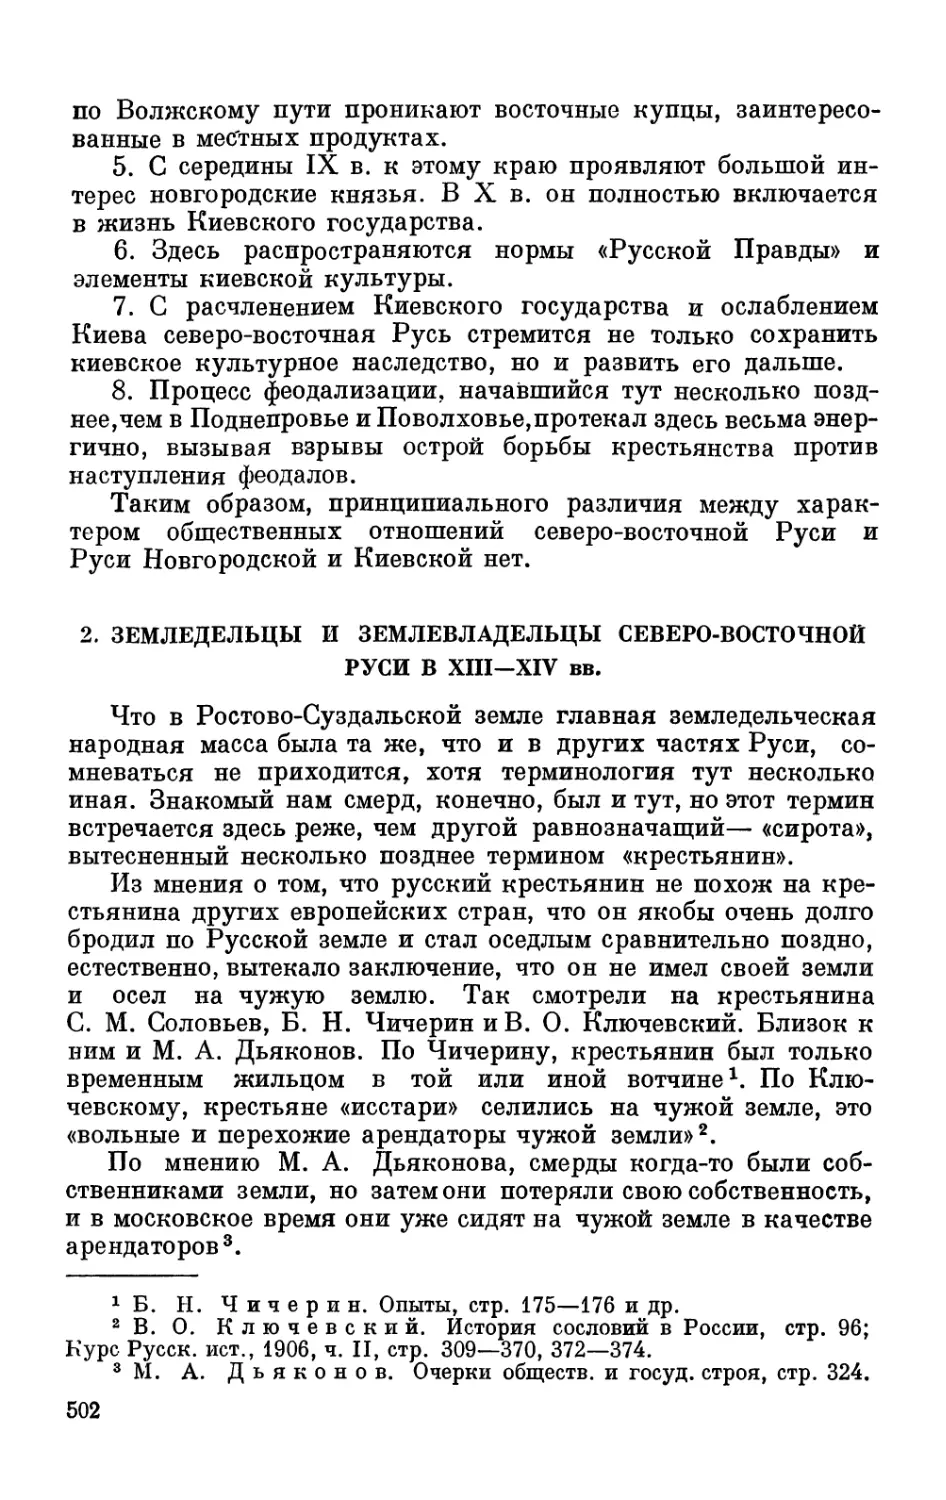 2. Земледельцы и землевладельцы северо-восточной Руси в XIII—XIV вв